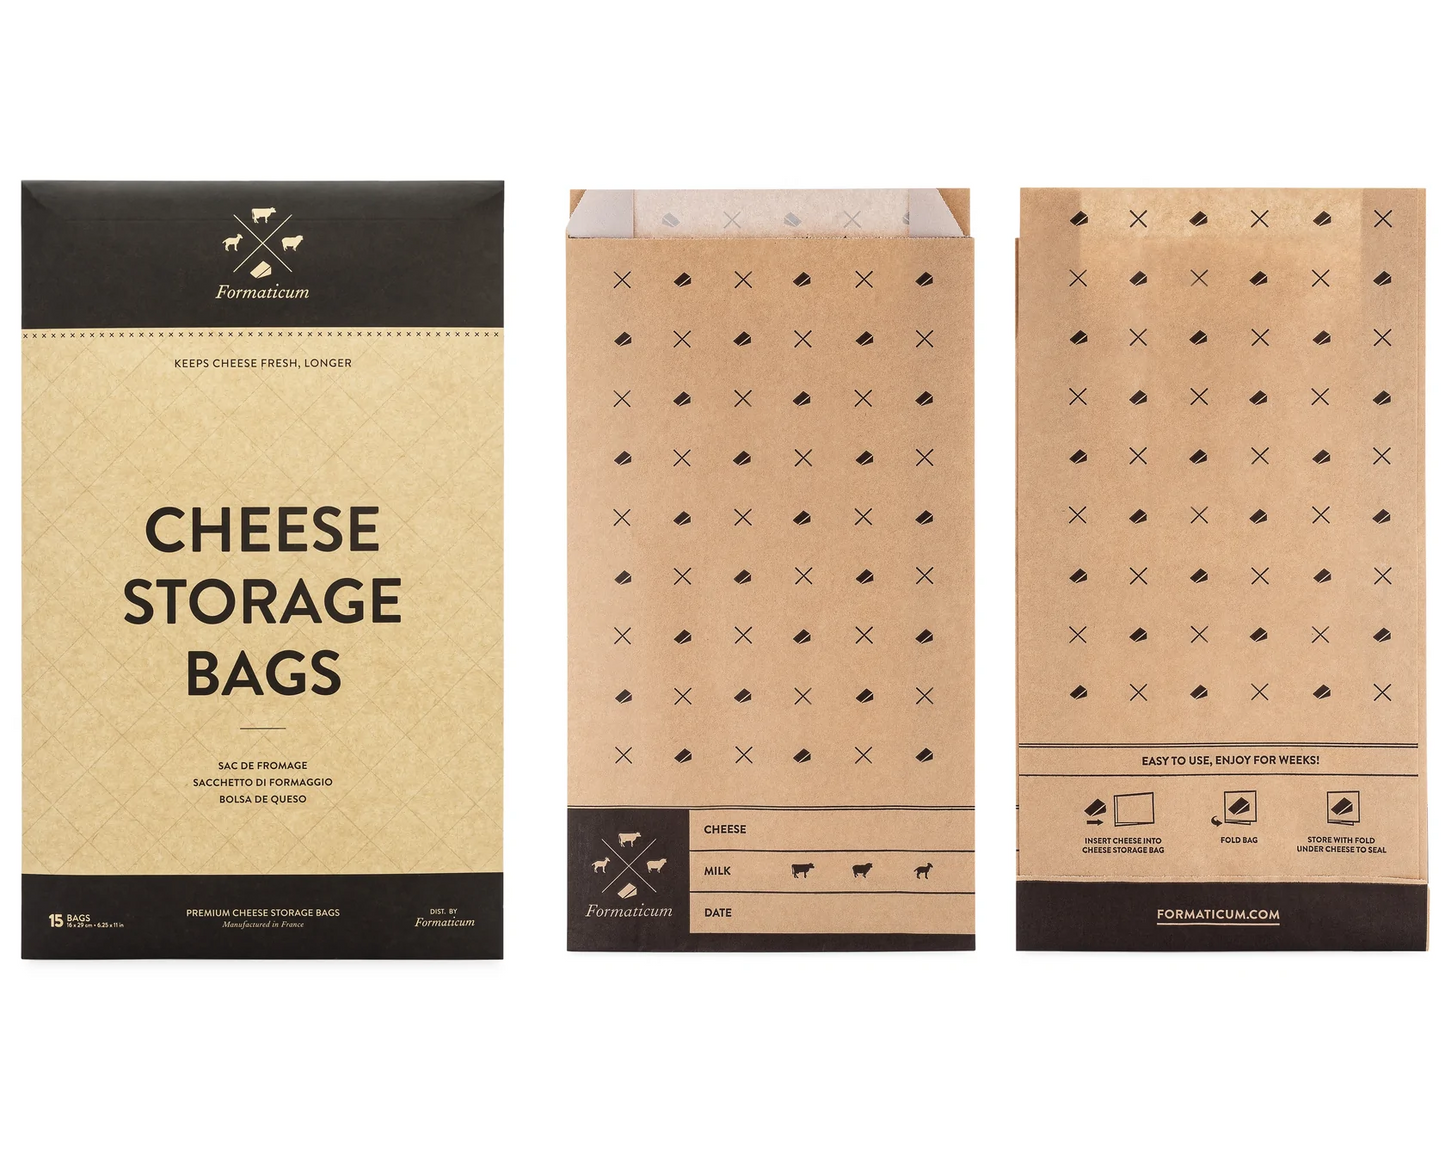 Cheese Storage Bags - Cassandra's Kitchen